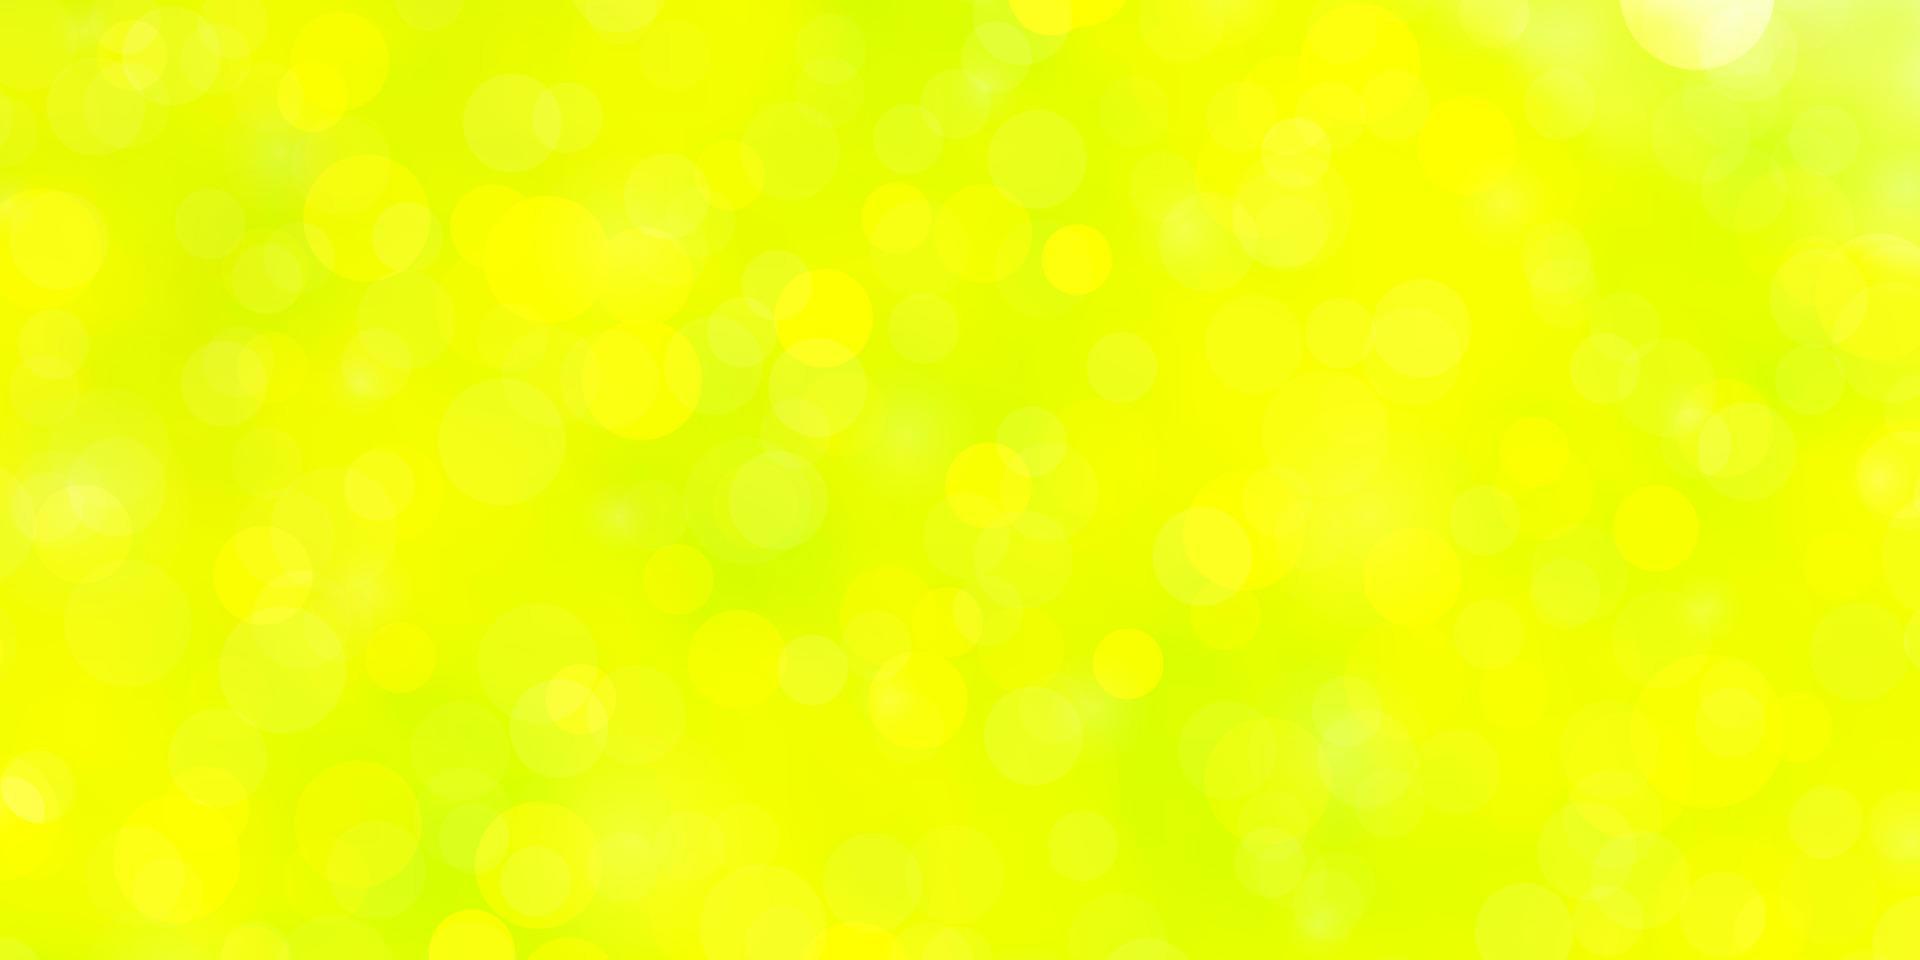 toile de fond de vecteur vert clair, jaune avec des cercles.